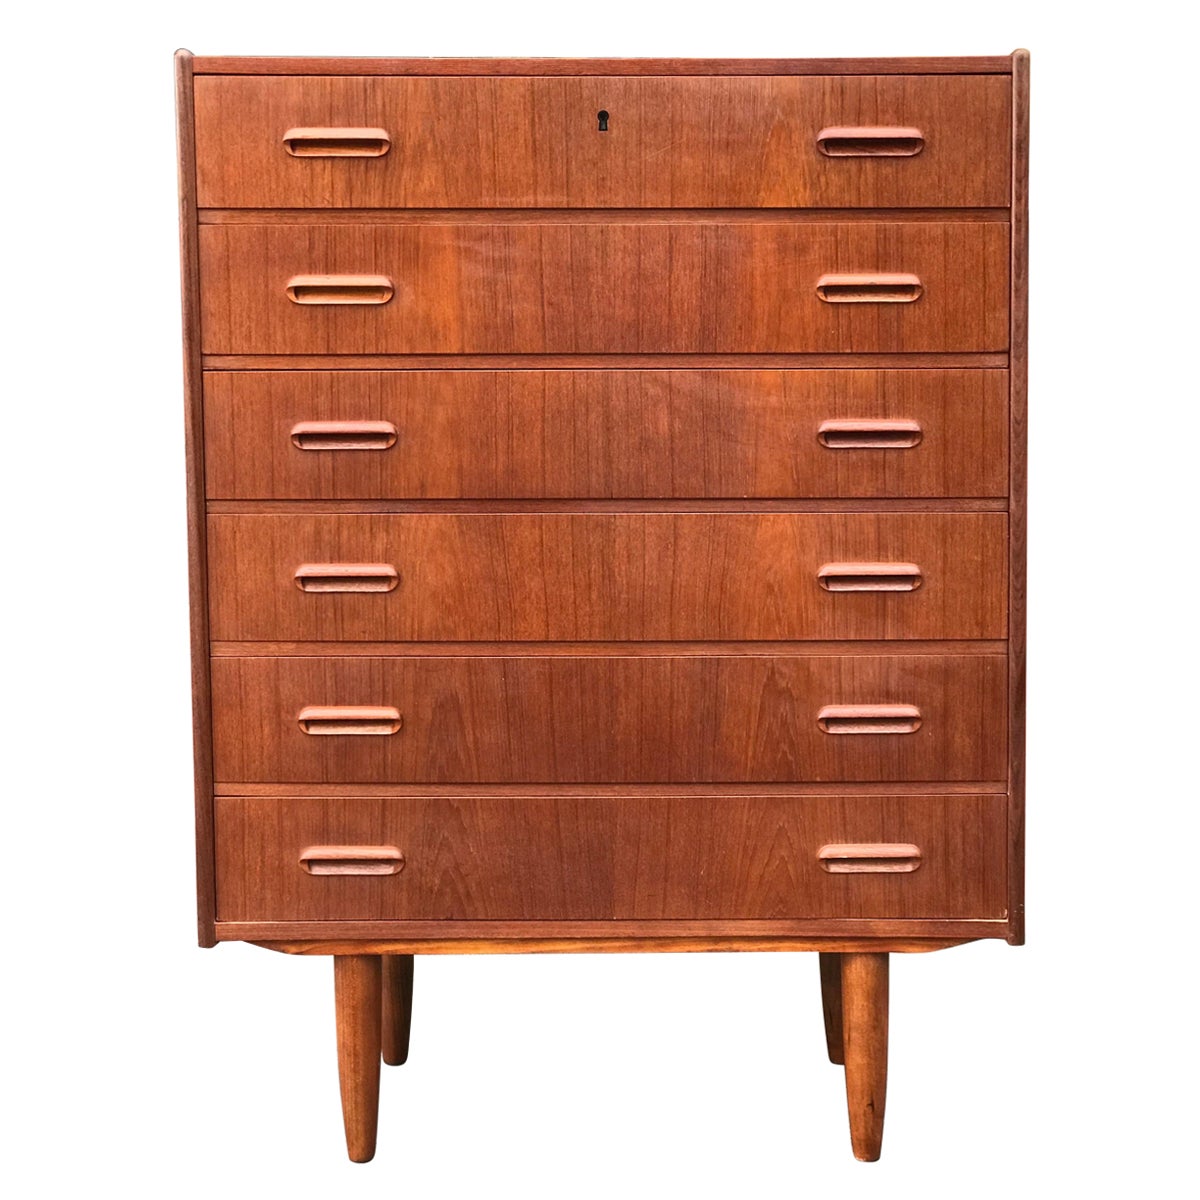 Vintage Mid-Century Modern Dresser Cabinet Storage Drawers By DryLund 